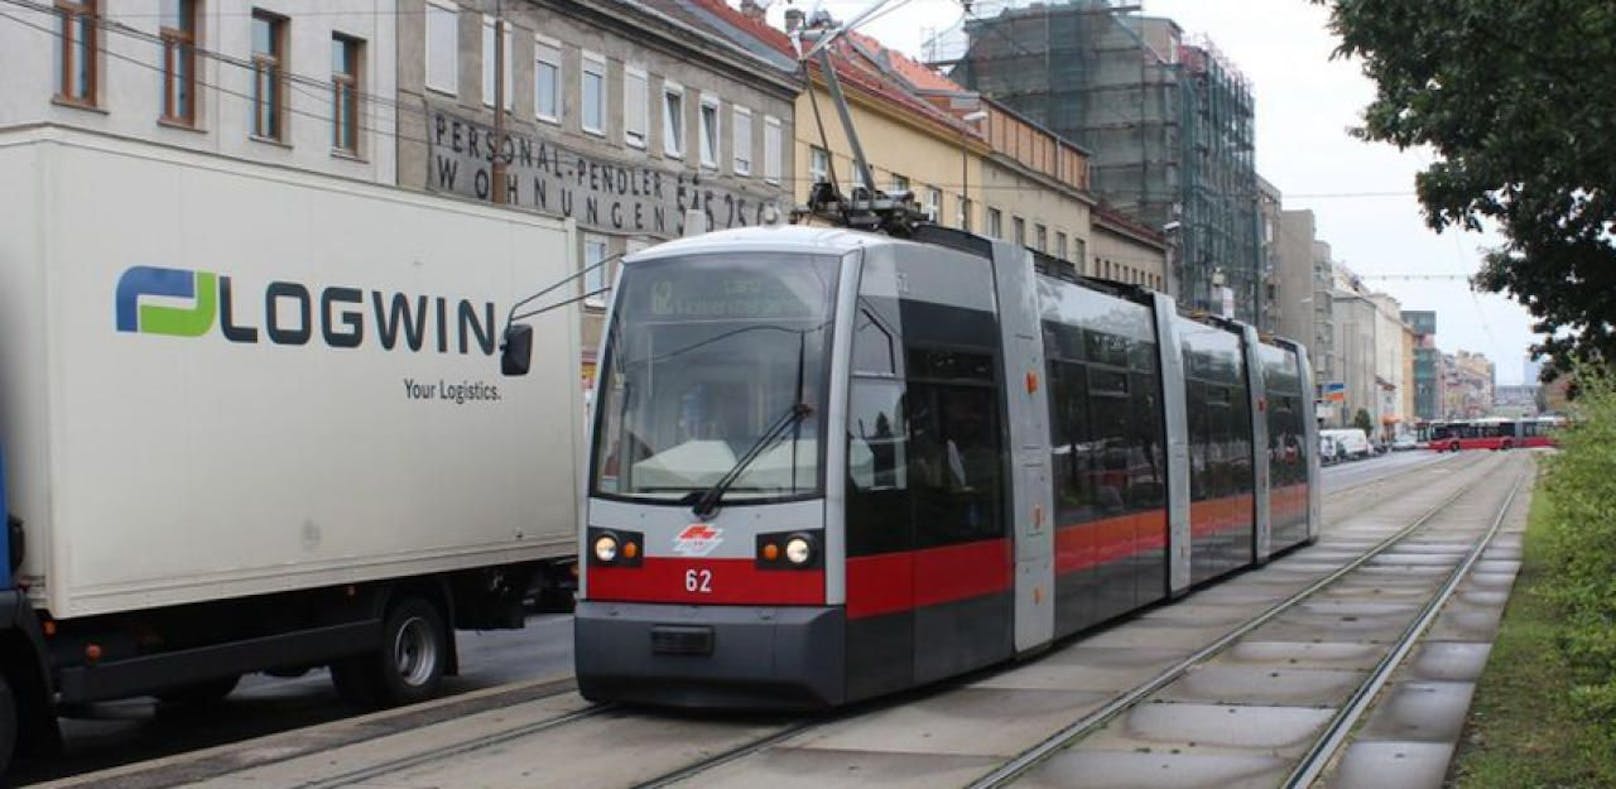 Wiener Straßenbahn-Garnitur der Linie 62. Symbolfoto